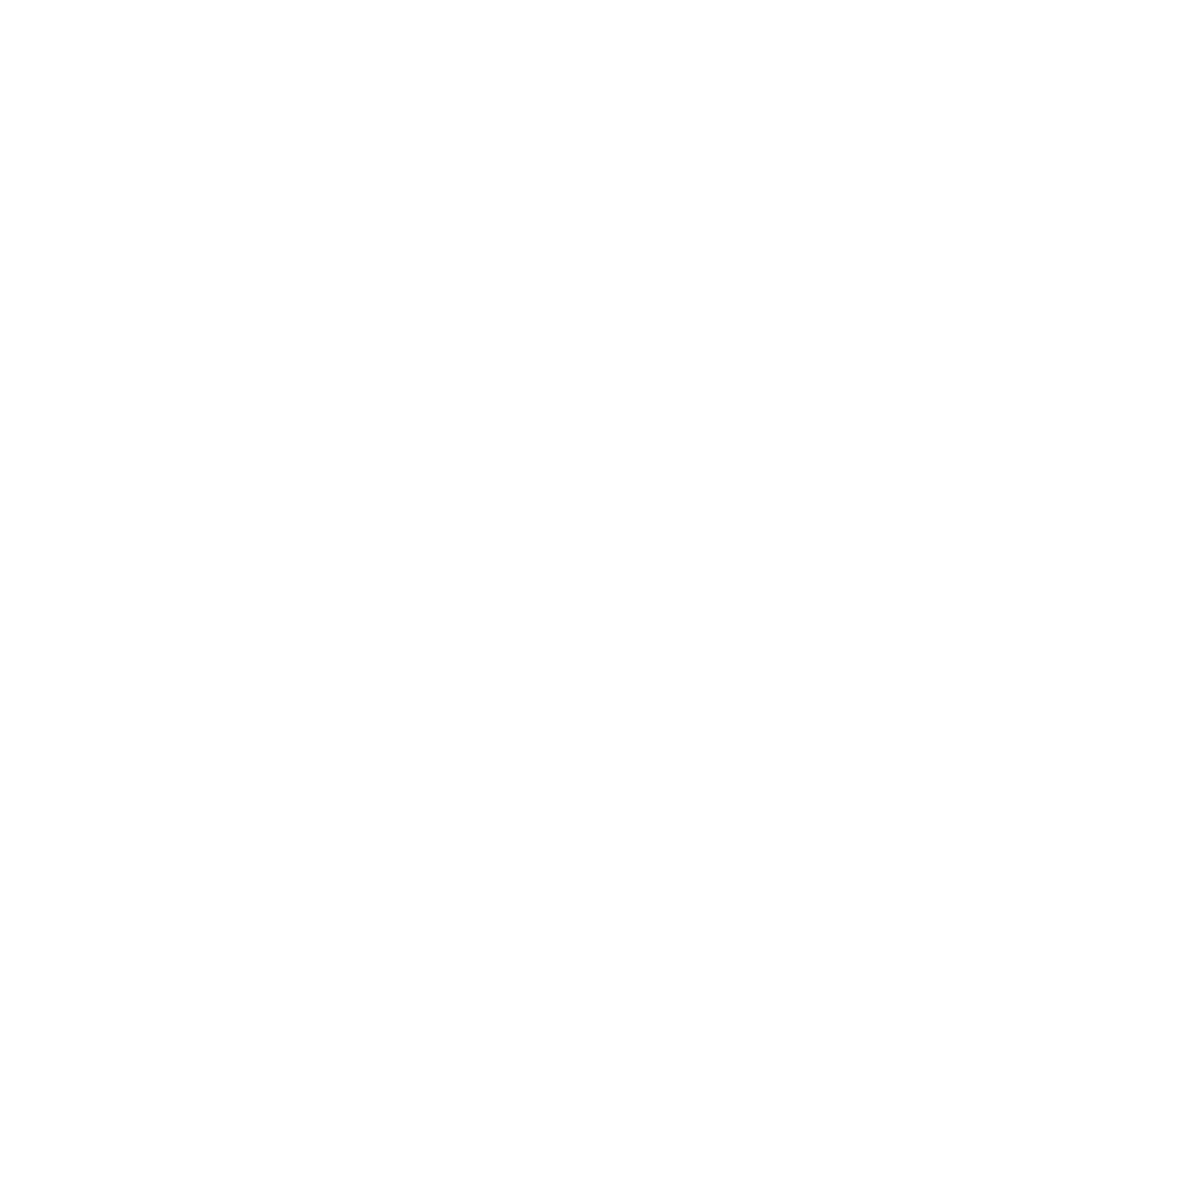 Tuk Tuk Thai Restaurant and Bar